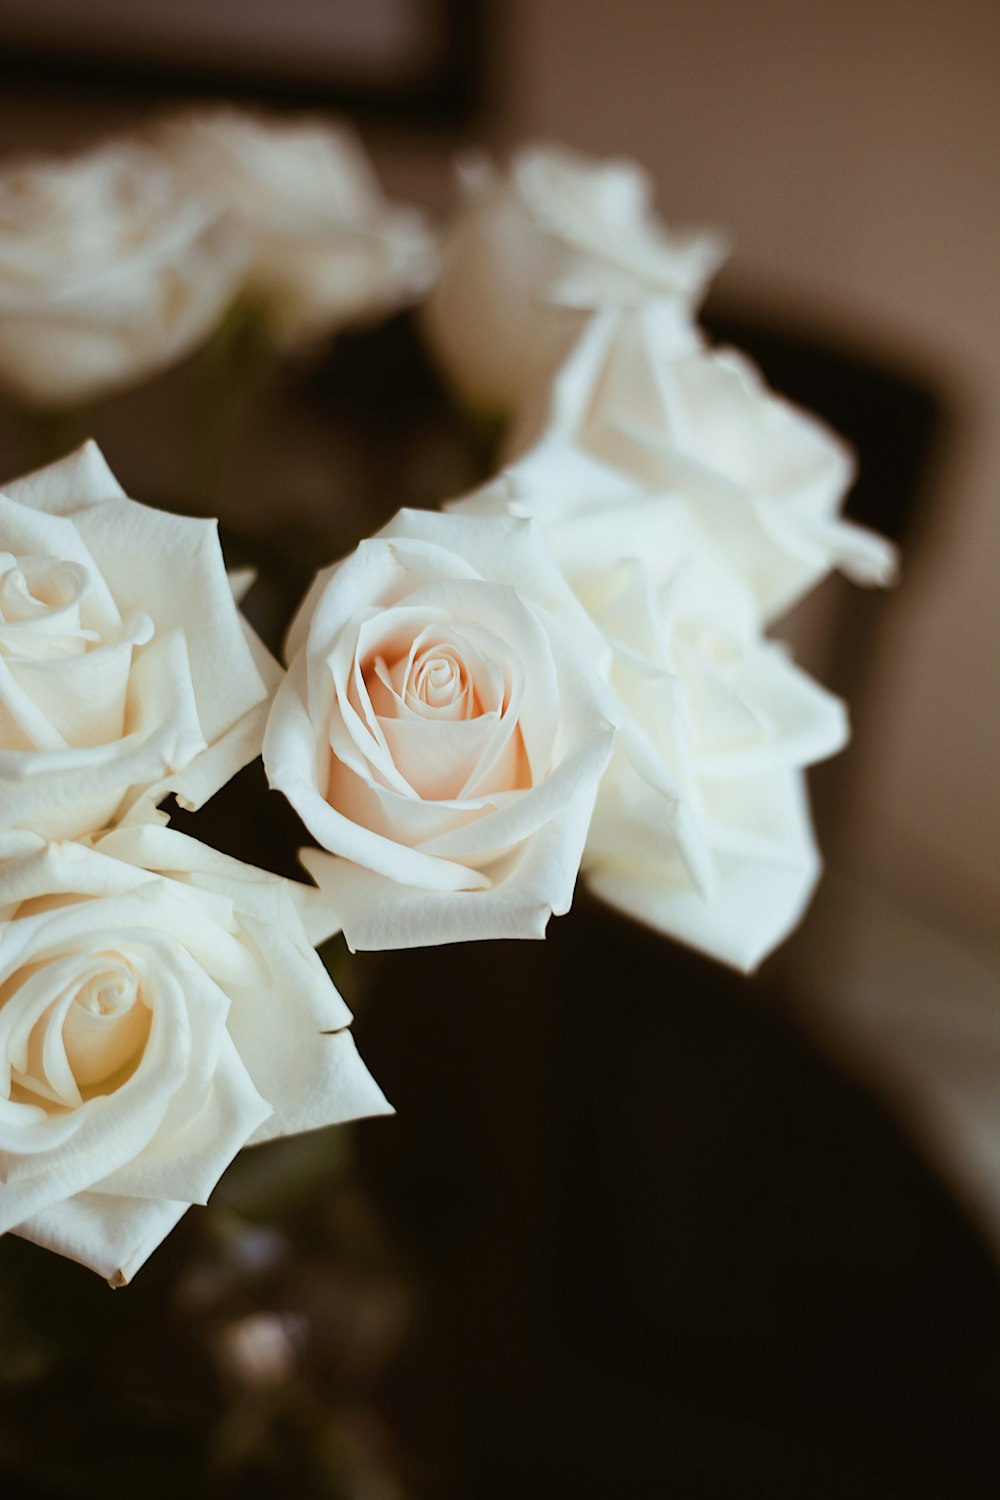 테이블 위에 하얀 장미로 가득 찬 꽃병